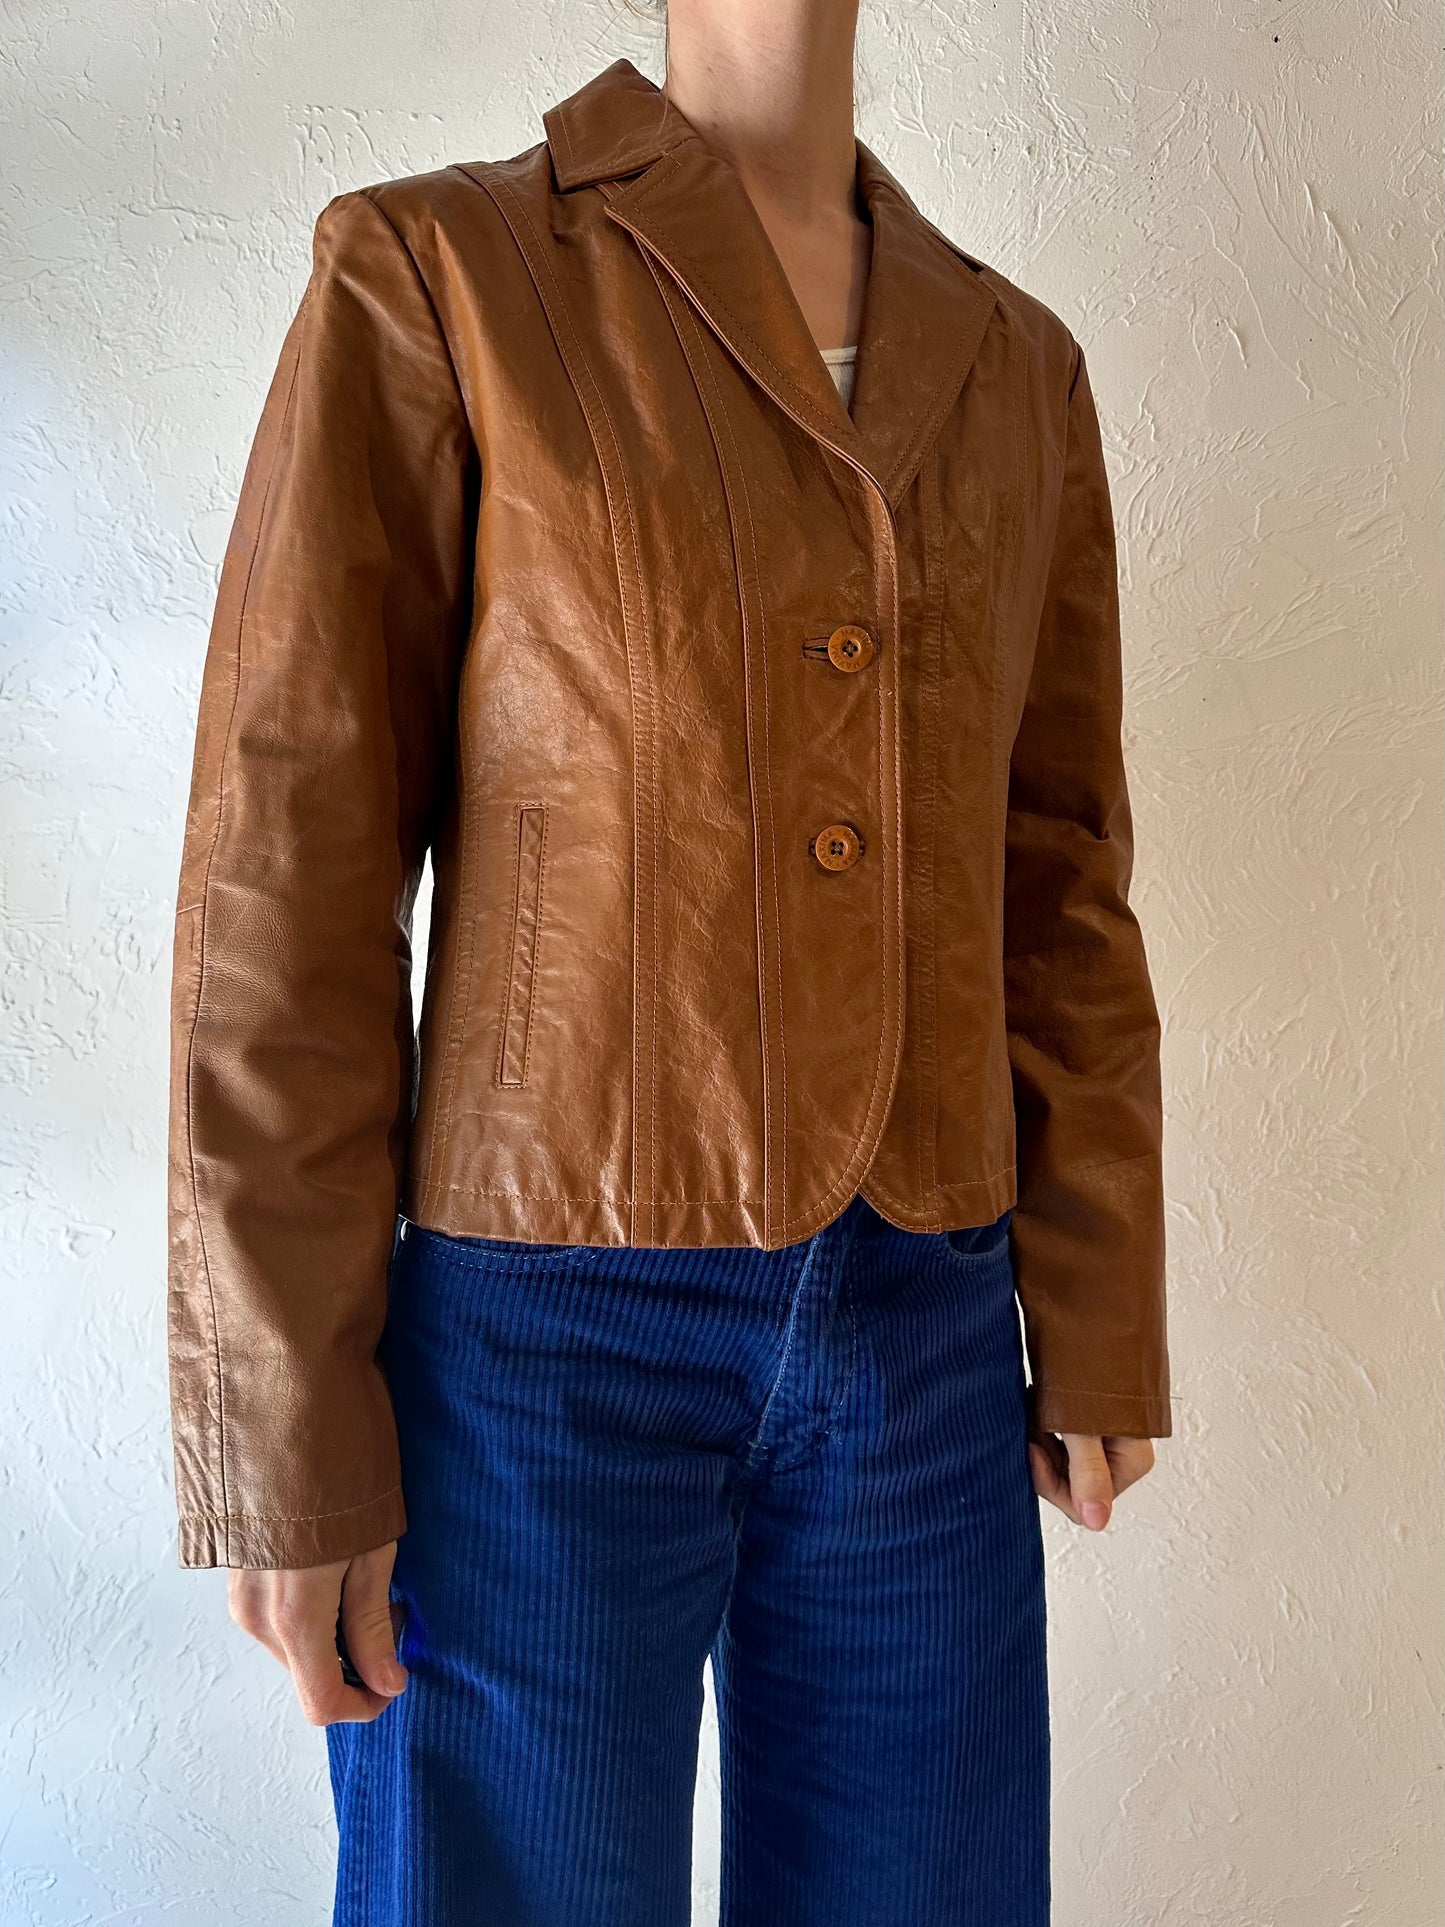 Y2k 'Wilsons' Brown Leather Jacket / Medium